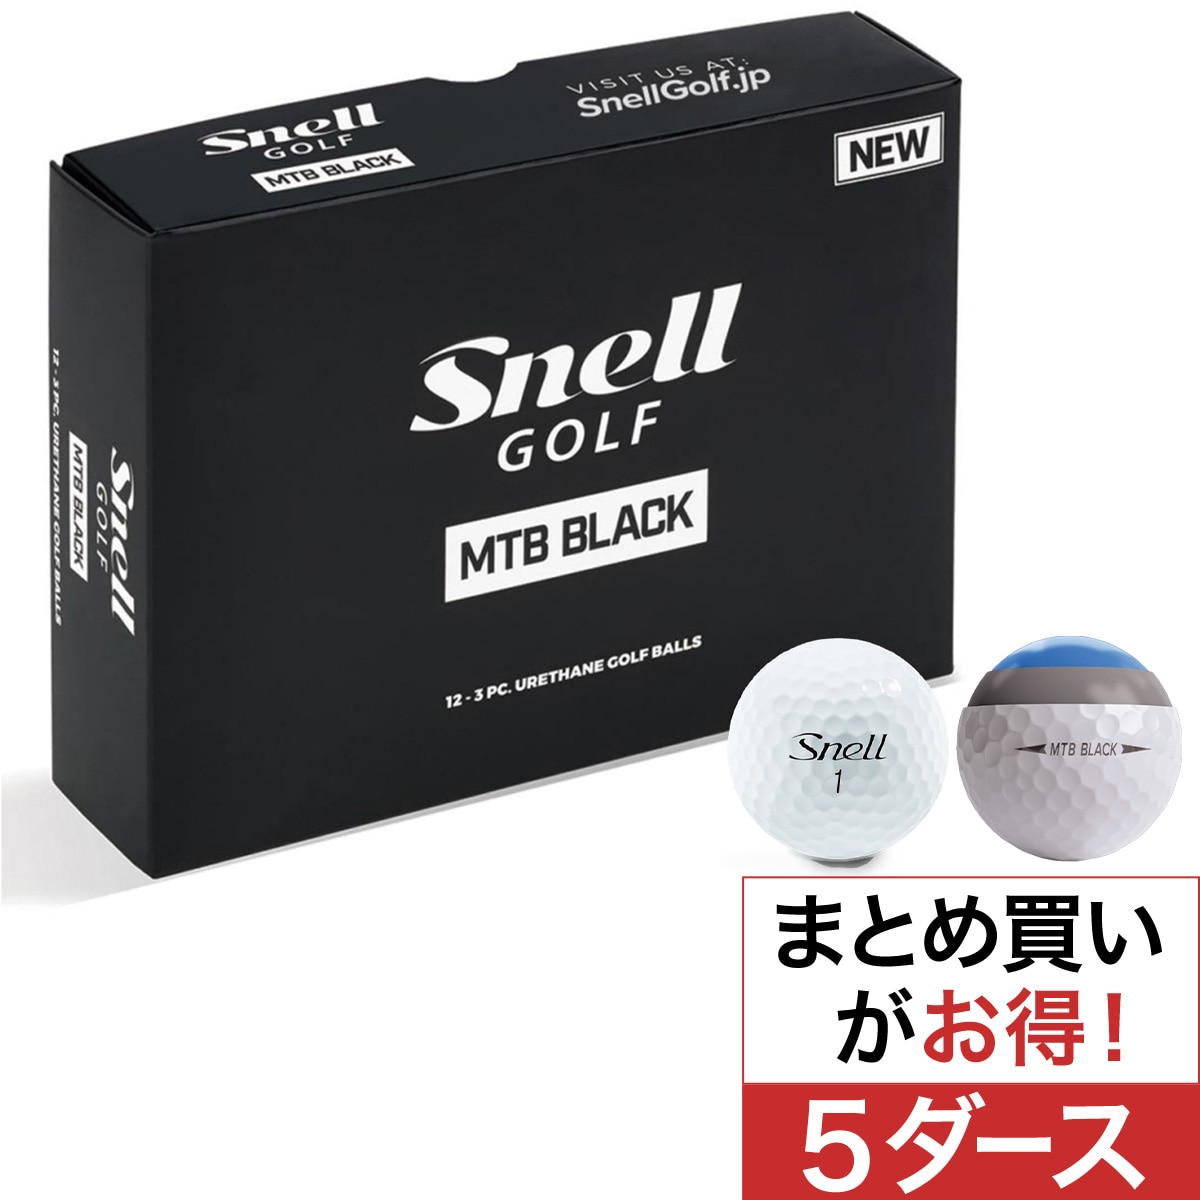 【送料無料】SNELL MTB BLACK スネルボール 新品 2ダース 正規品